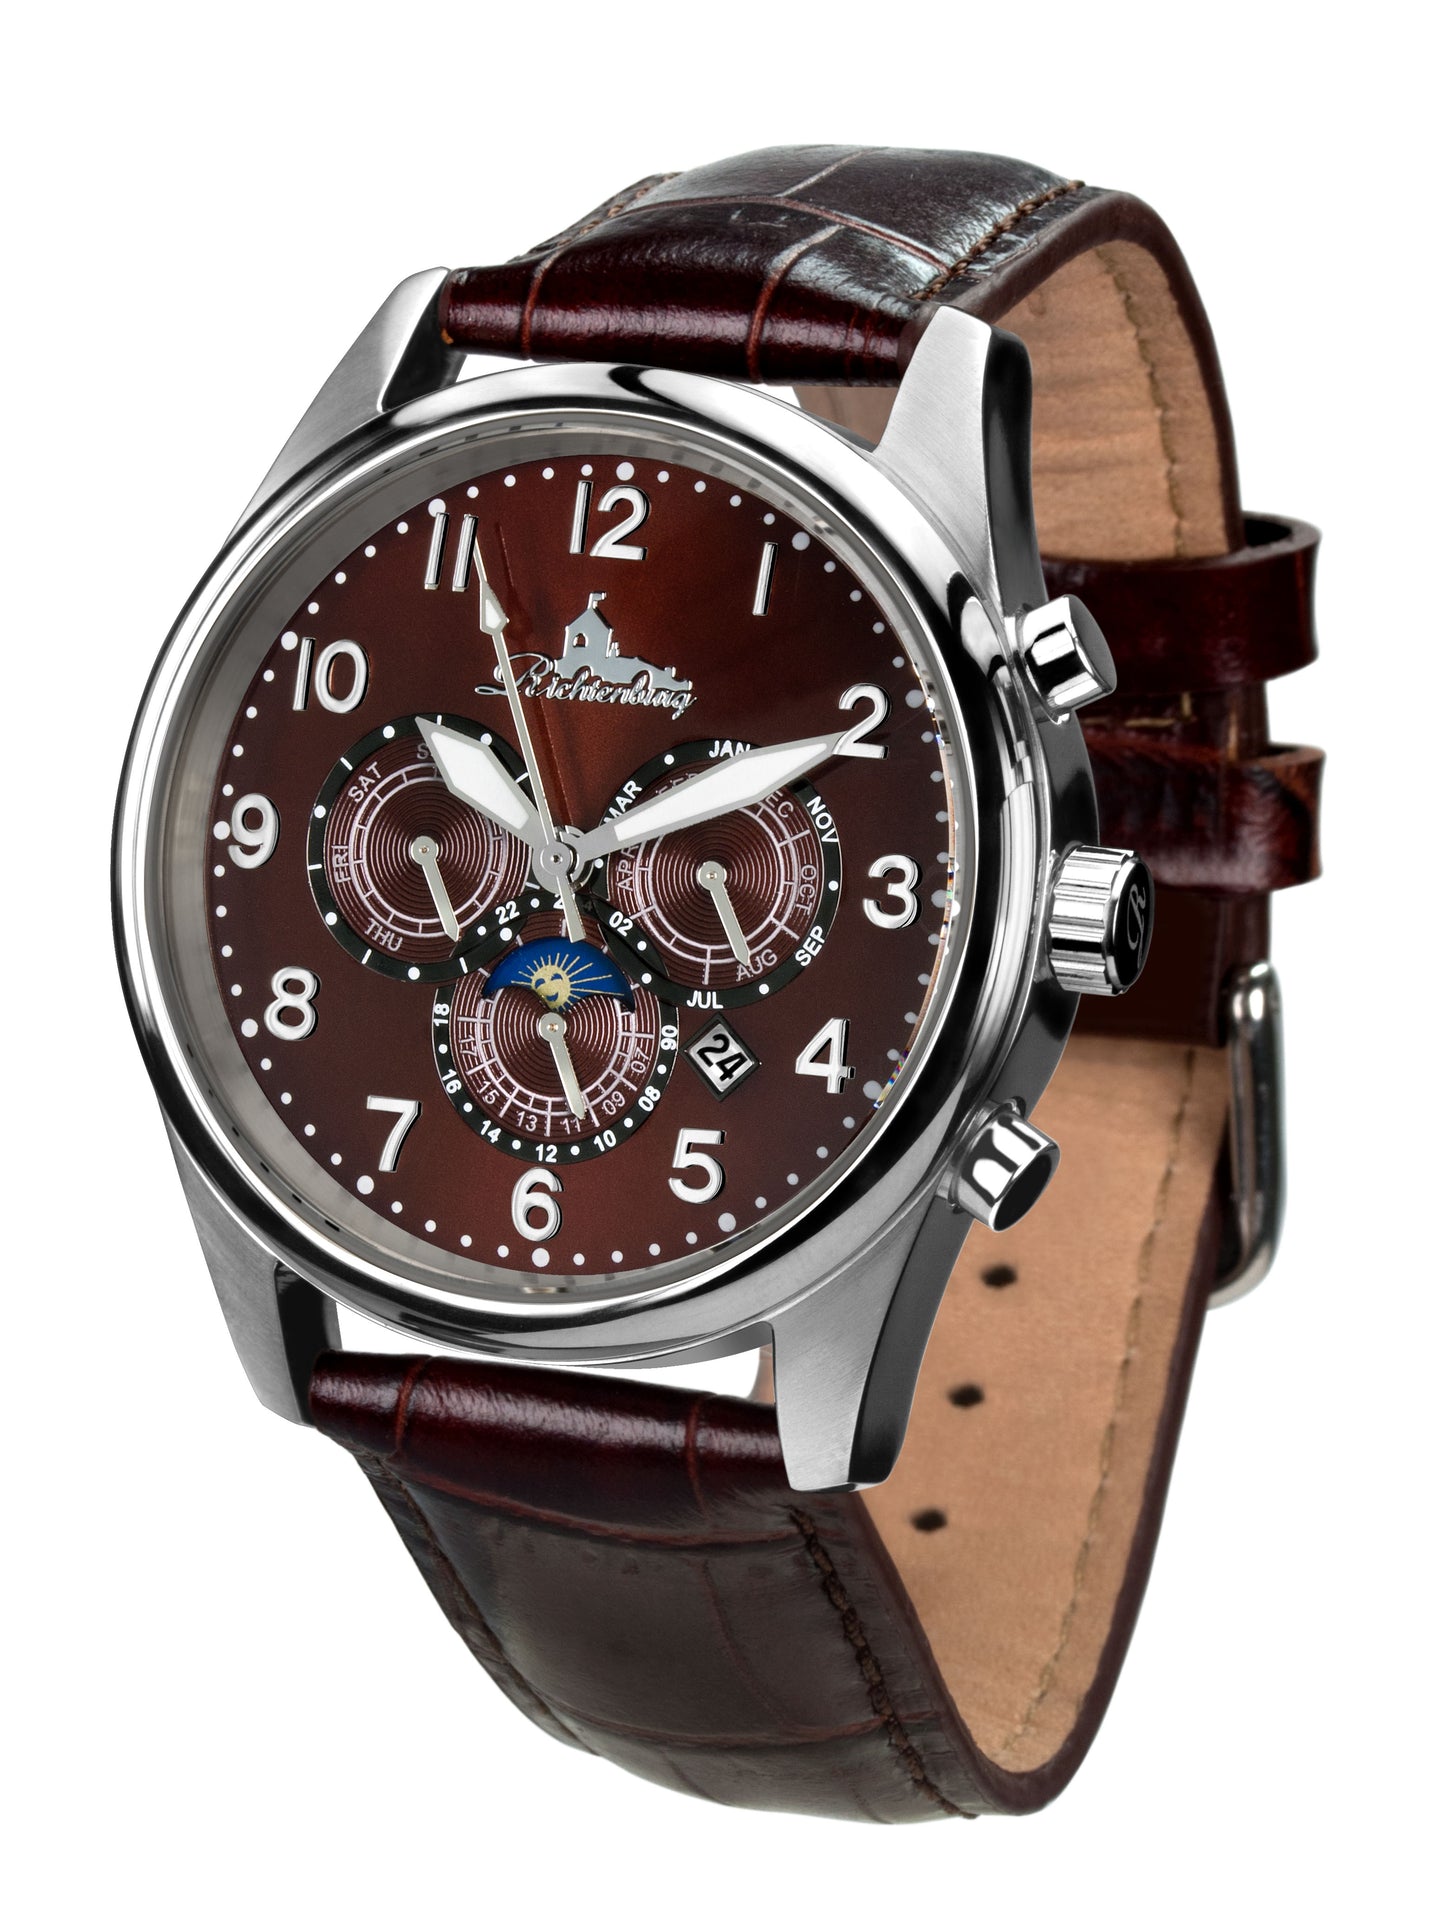 Automatic watches — Athen — Richtenburg — brown